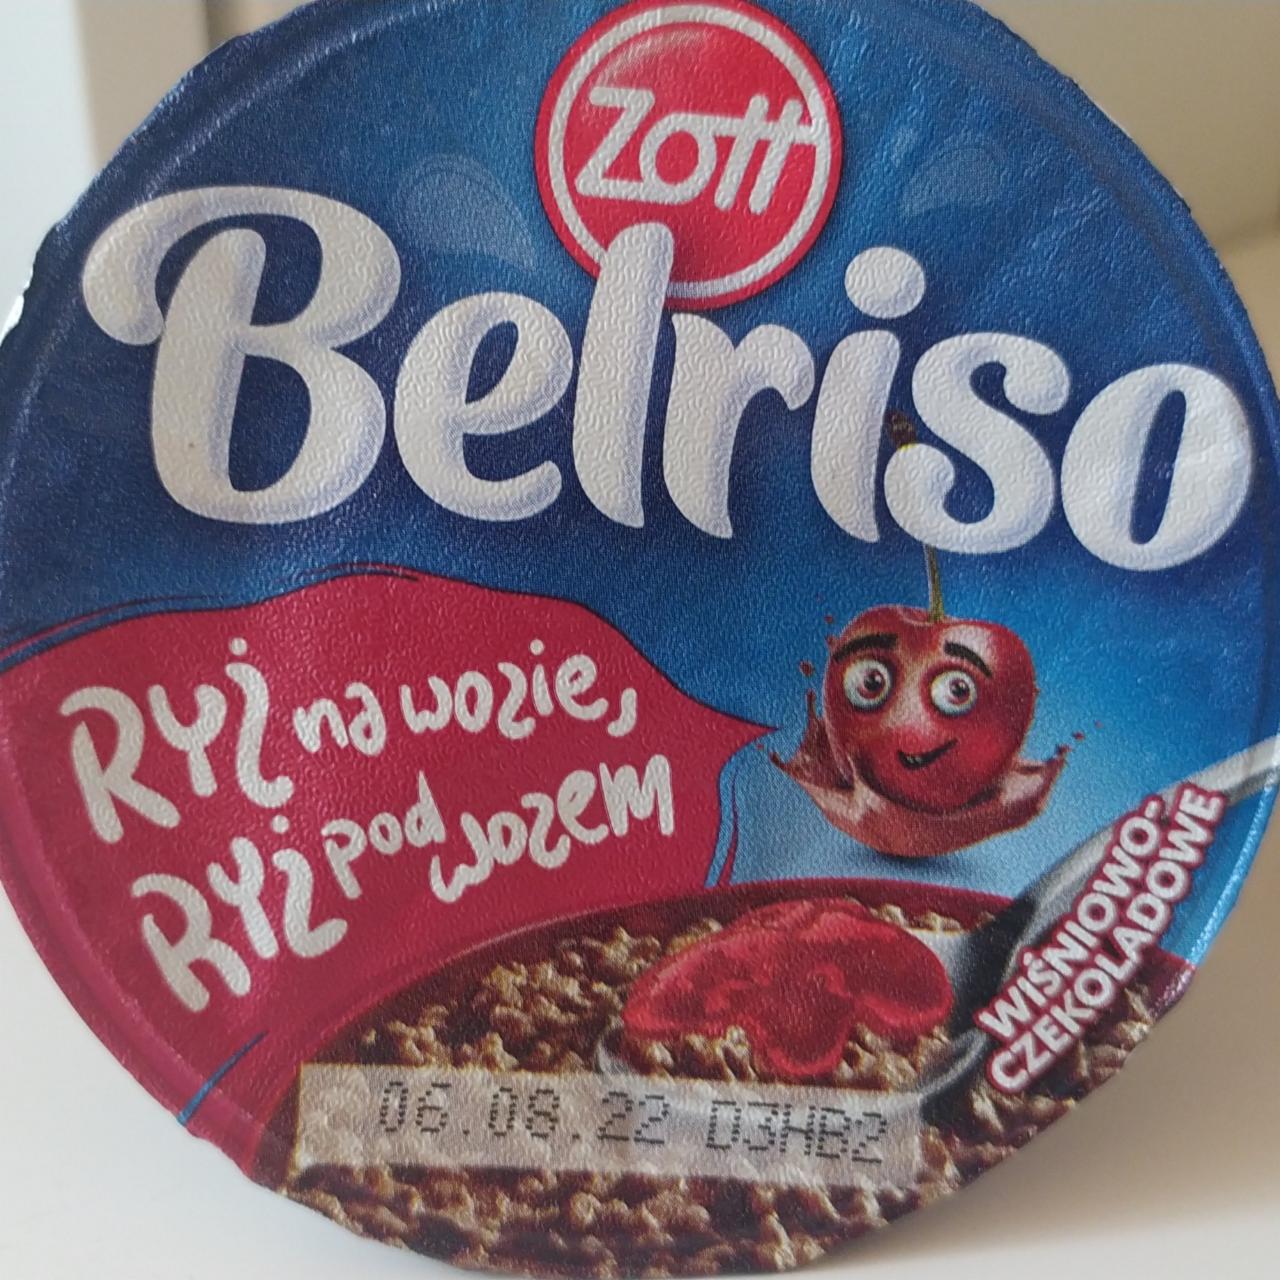 Zdjęcia - Belriso wiśniowo-czekoladowe Zott